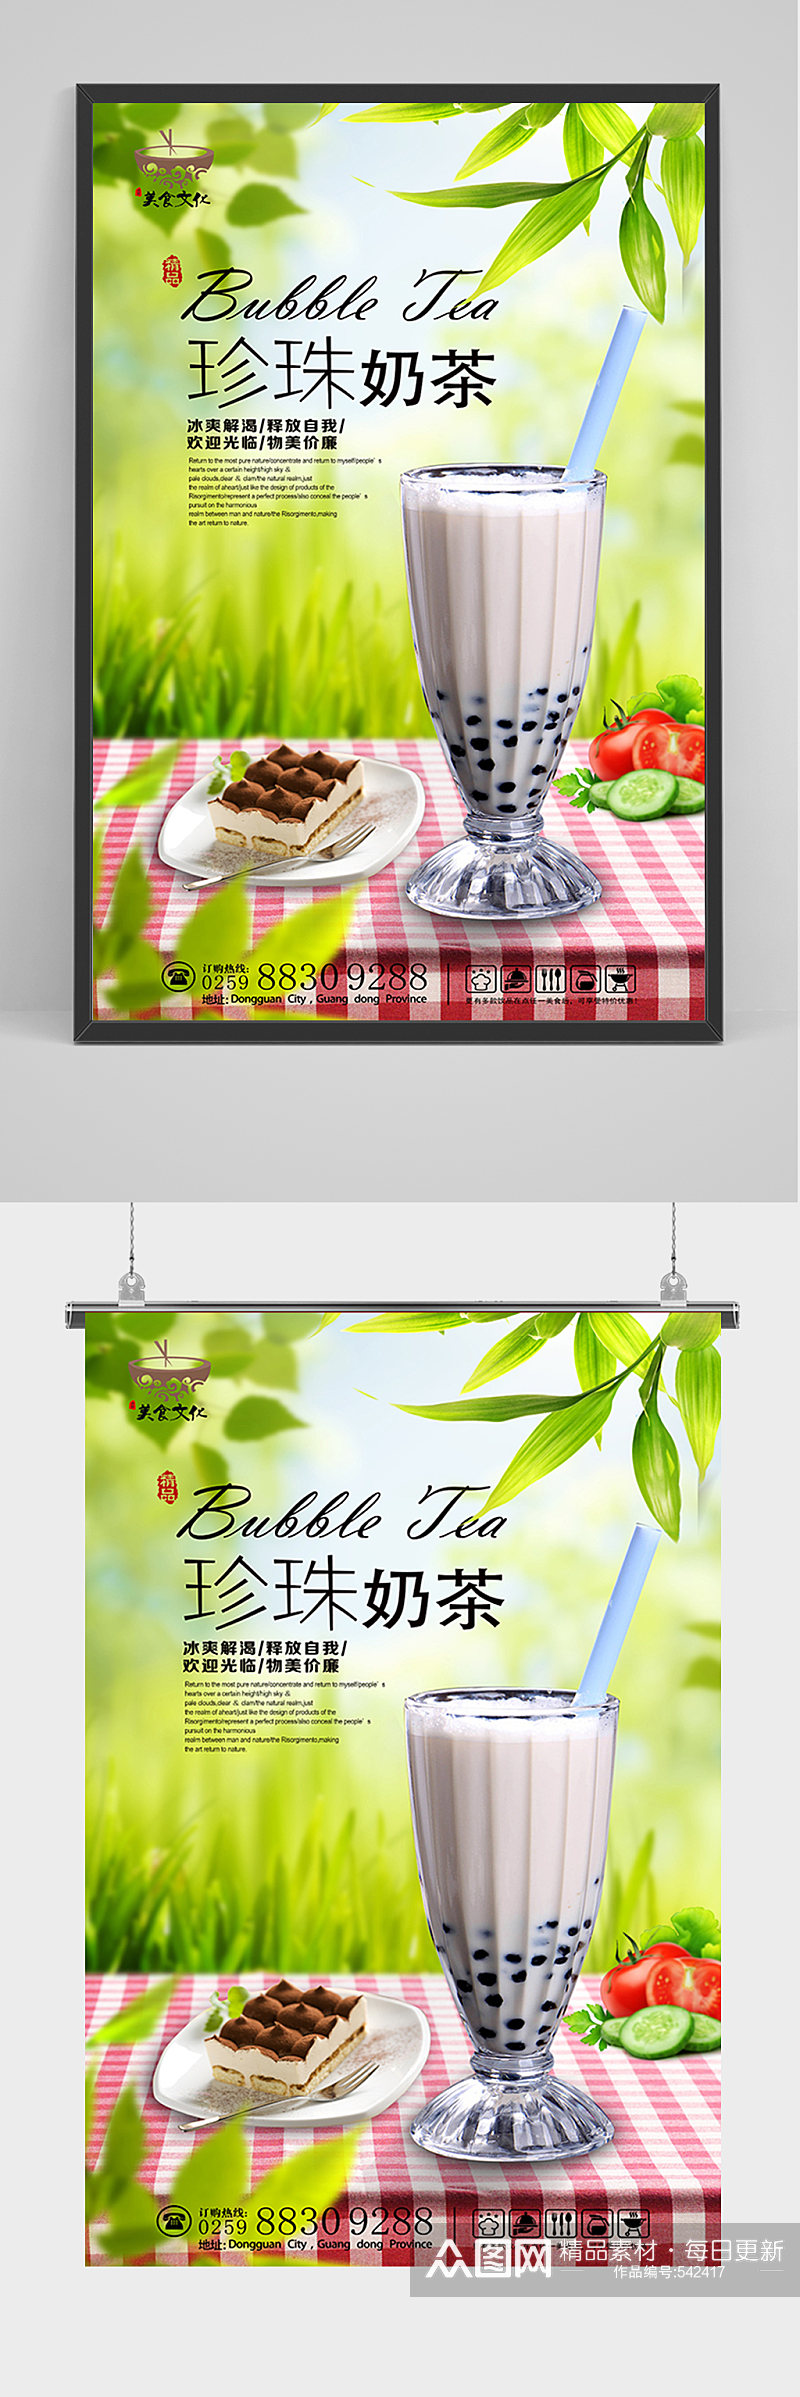 珍珠奶茶宣传海报素材